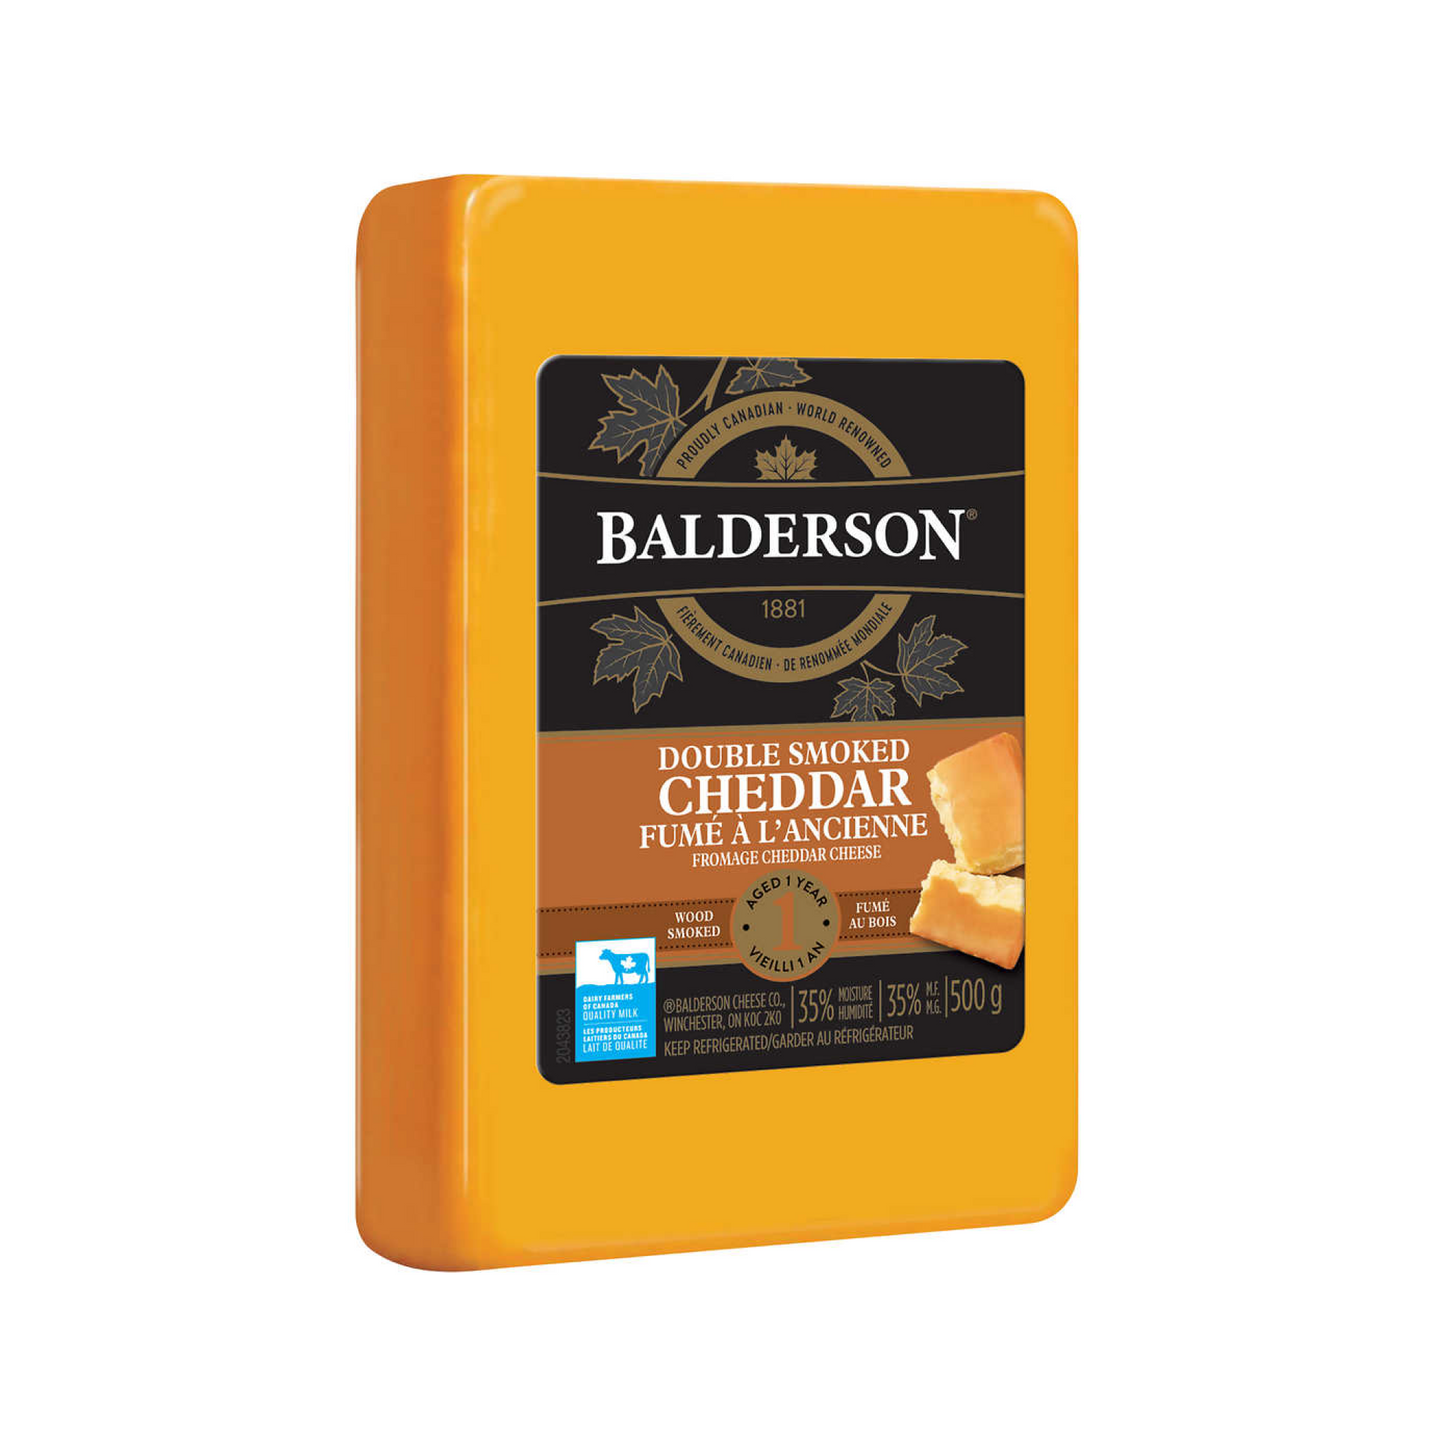 Balderson Cheddar Extra Old RW